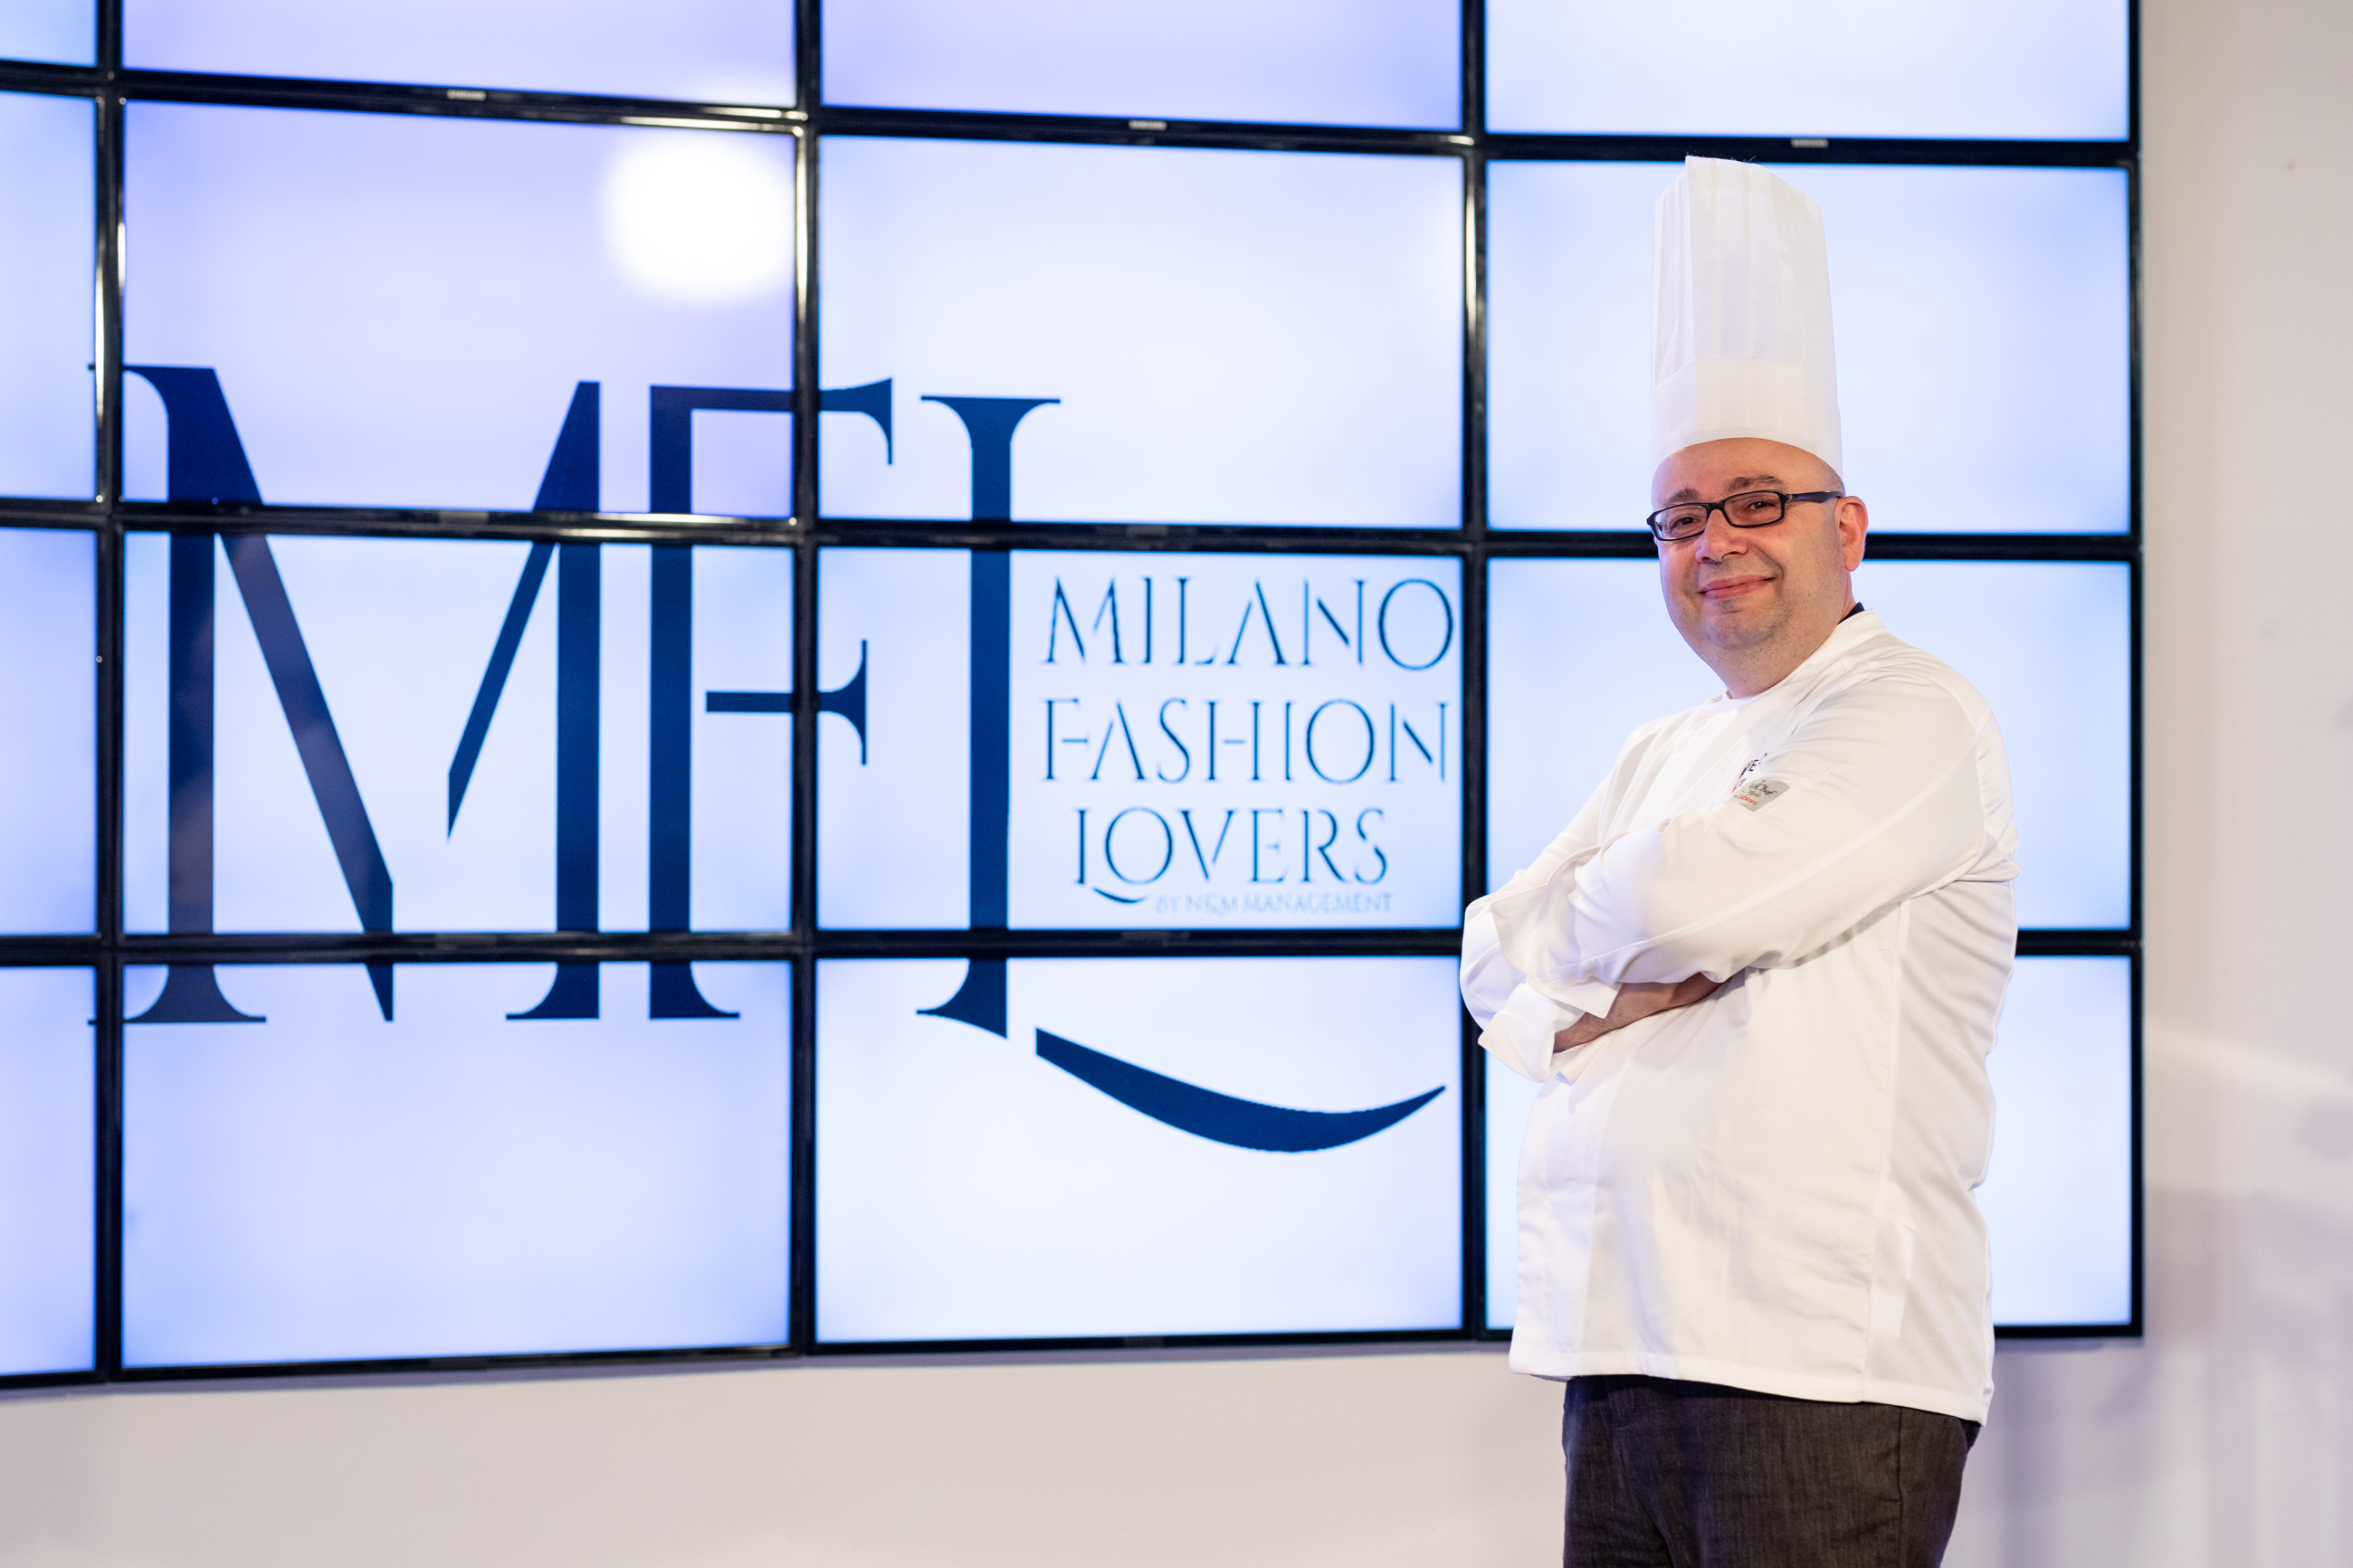 Il Maestro Chef della Frutta Andrea Lopopolo : successo e gradimento di pubblico a Milano Fashion Lovers